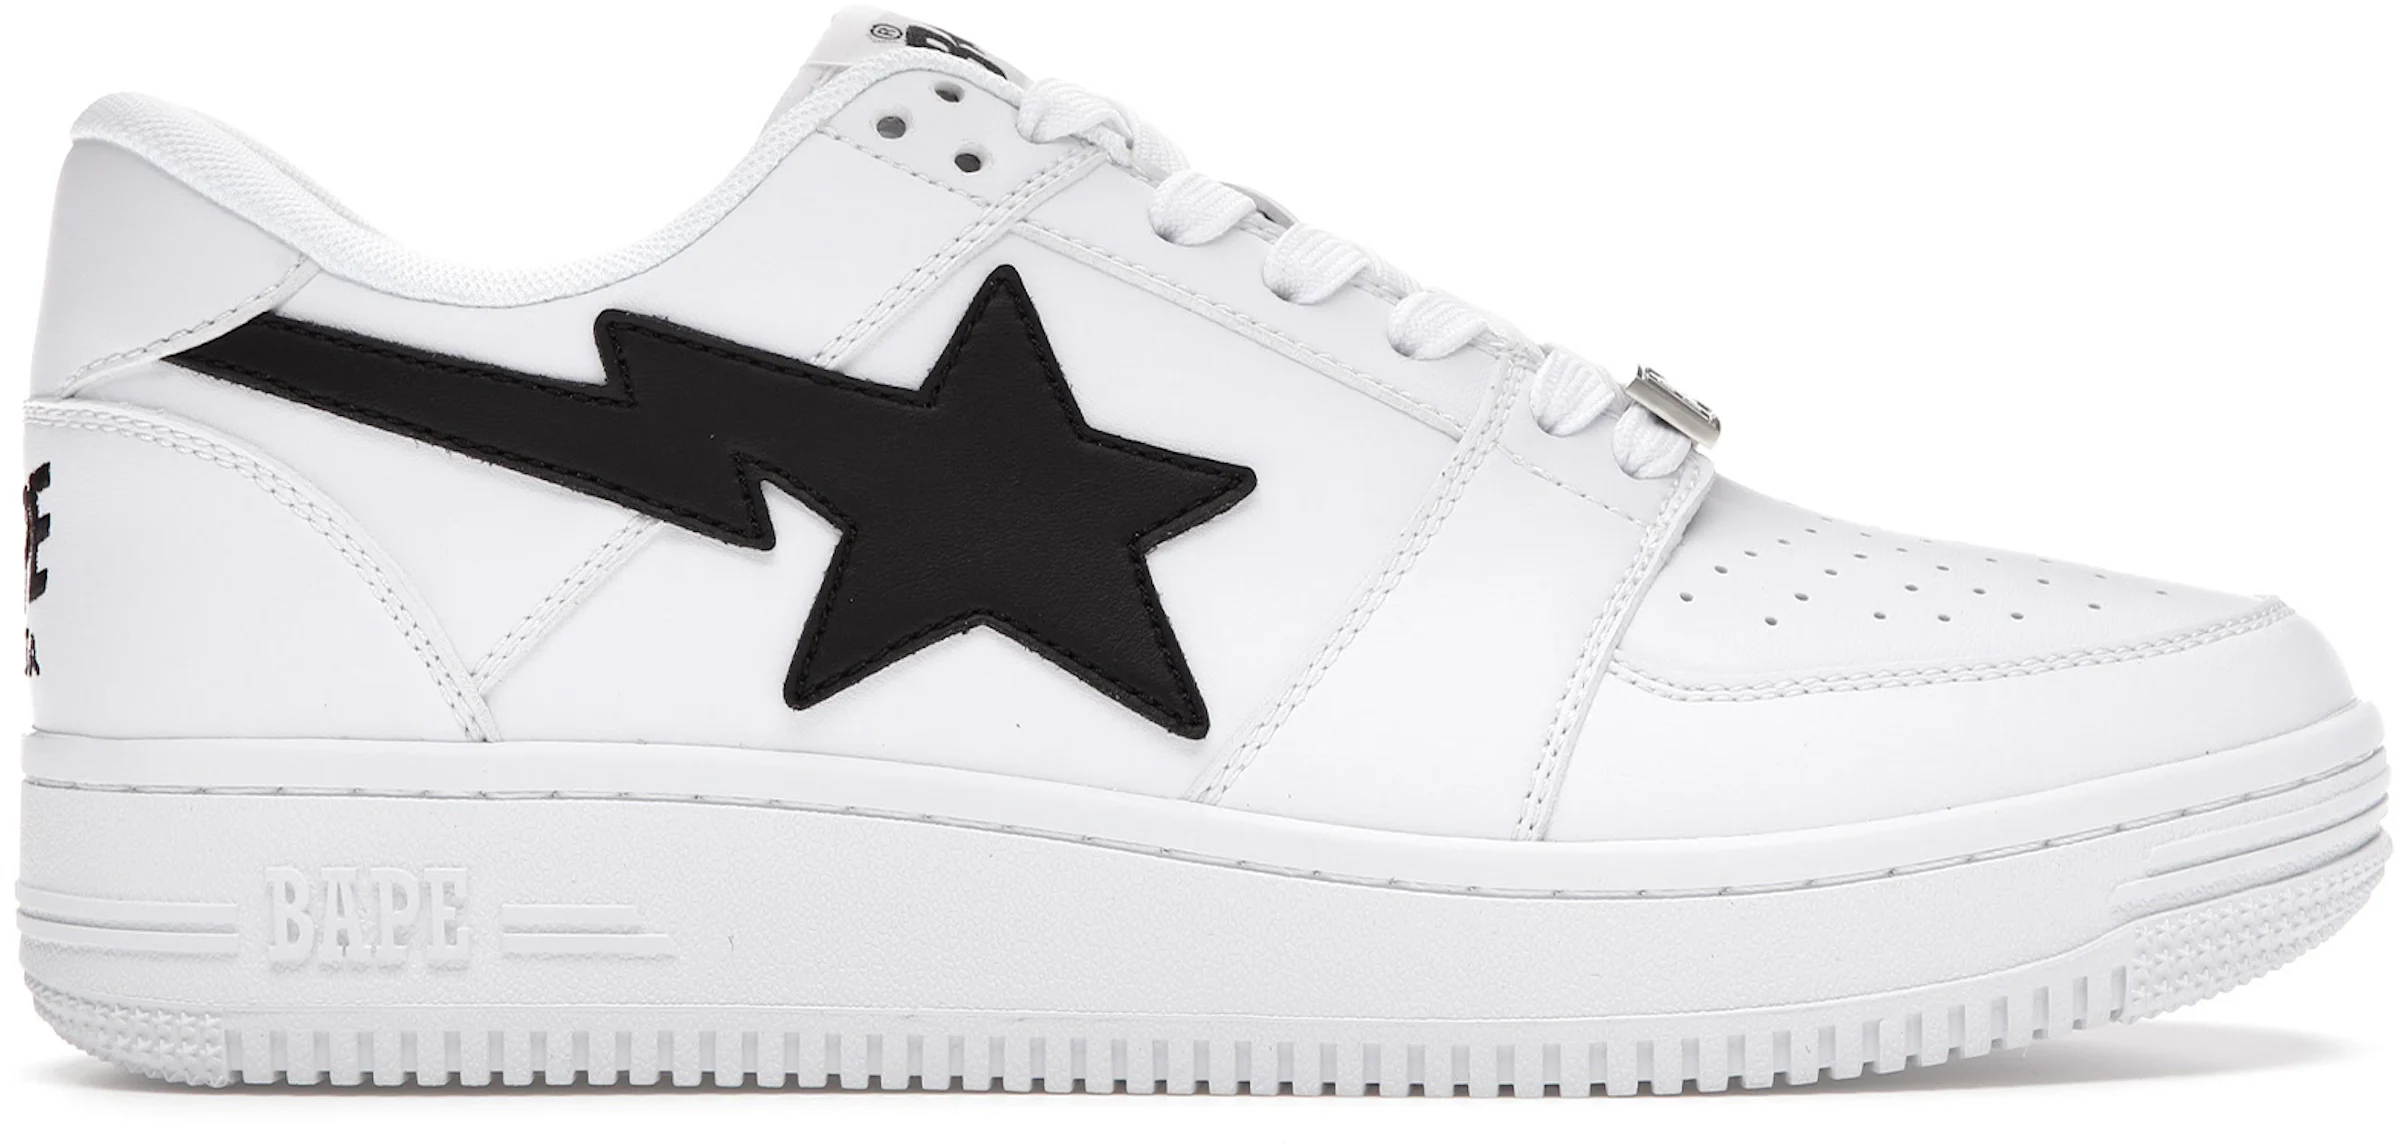 Nike x Supreme Air Force 1 Low Mini Box Logo White Sneakers - Farfetch